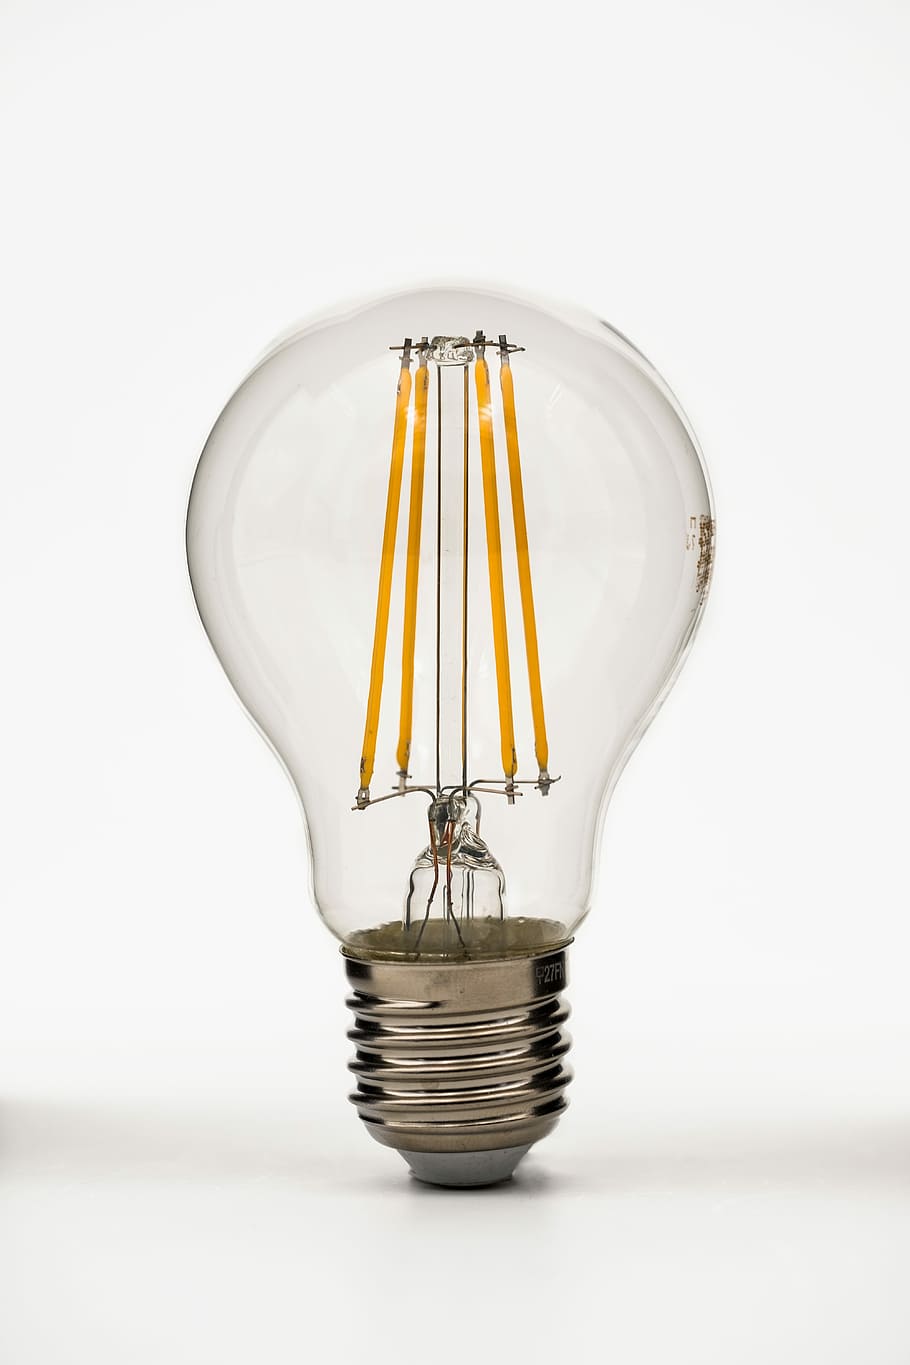 電球, ランプ, sparlampe, energiesparlampe, 保存, 経済的, 環境, 環境に優しい, led, 光